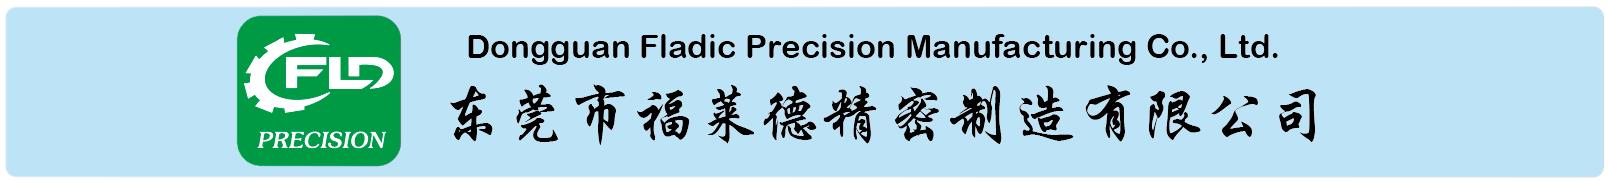 Dongguan Fladic Precision Manufacturing Co., Ltd.